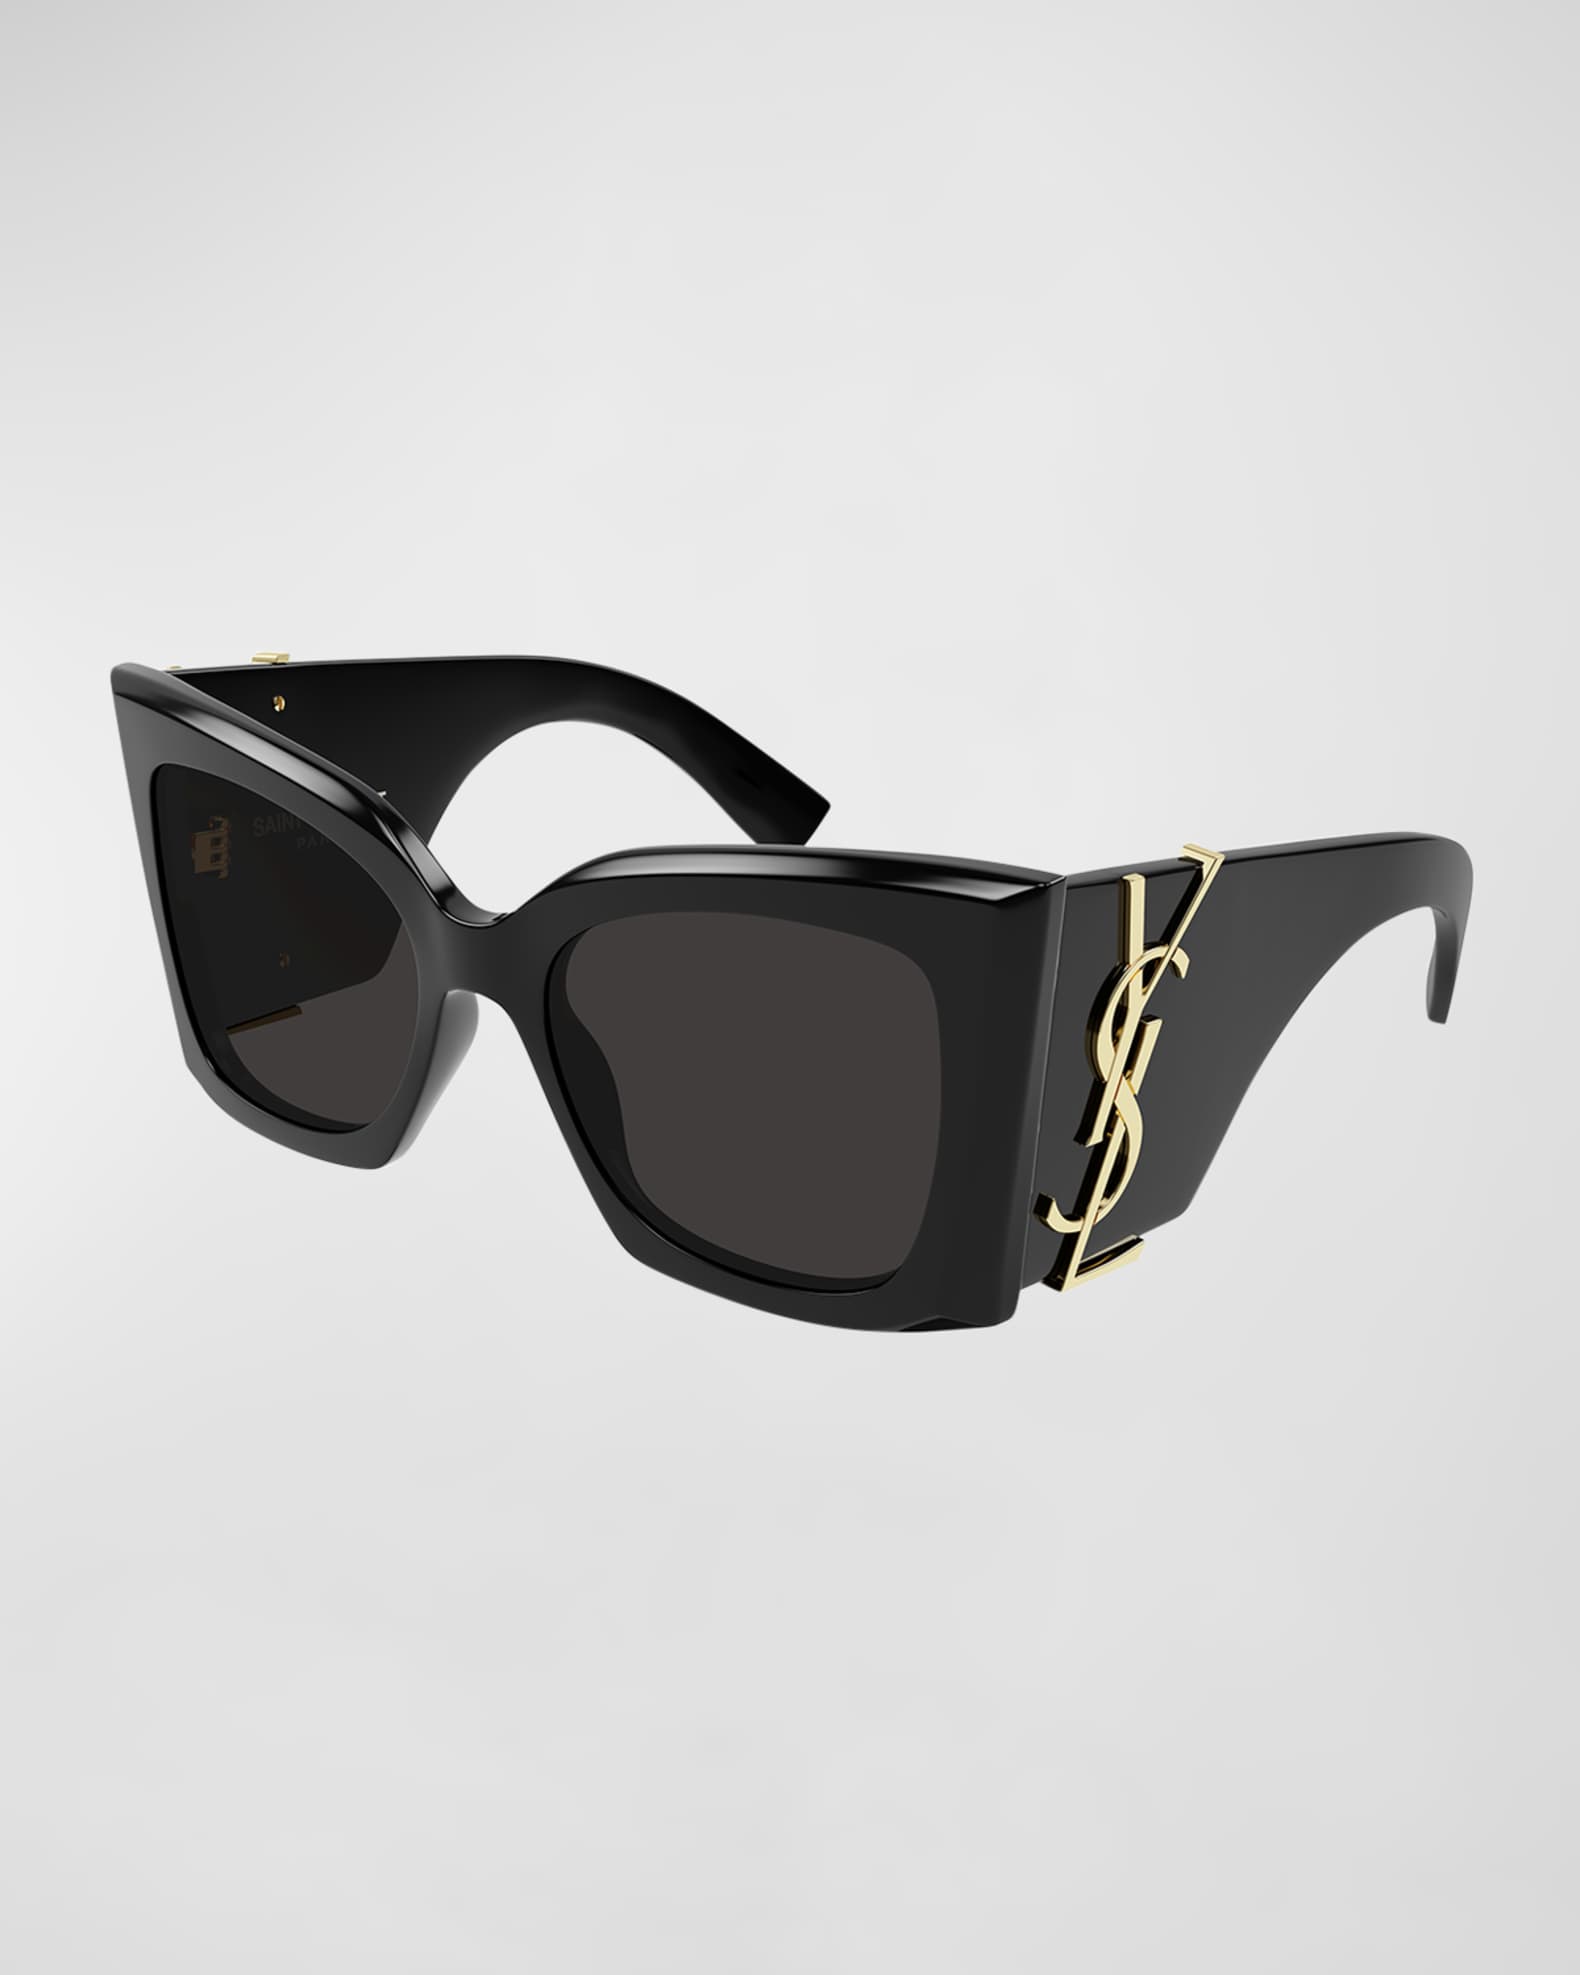  SAINT LAURENT Women's Oversized Cat Eye Sunglasses, Shiny  Black, One Size : Clothing, Shoes & Jewelry